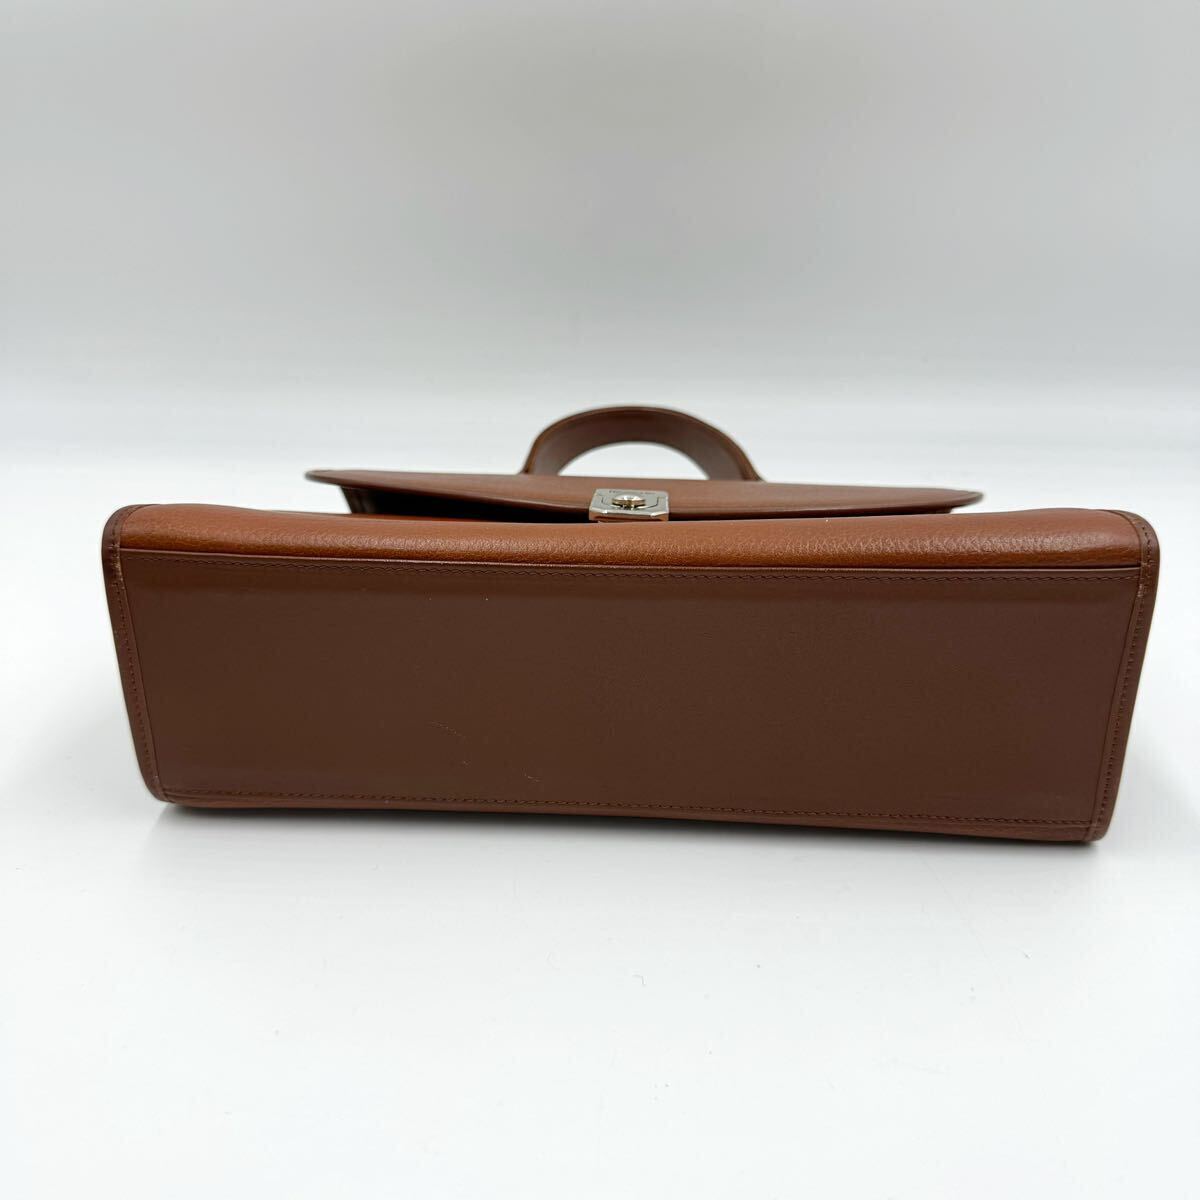 1 иен [ прекрасный товар ] Burberry Burberry сумка на плечо ручная сумочка noba проверка тень шланг 2way кожа Brown 